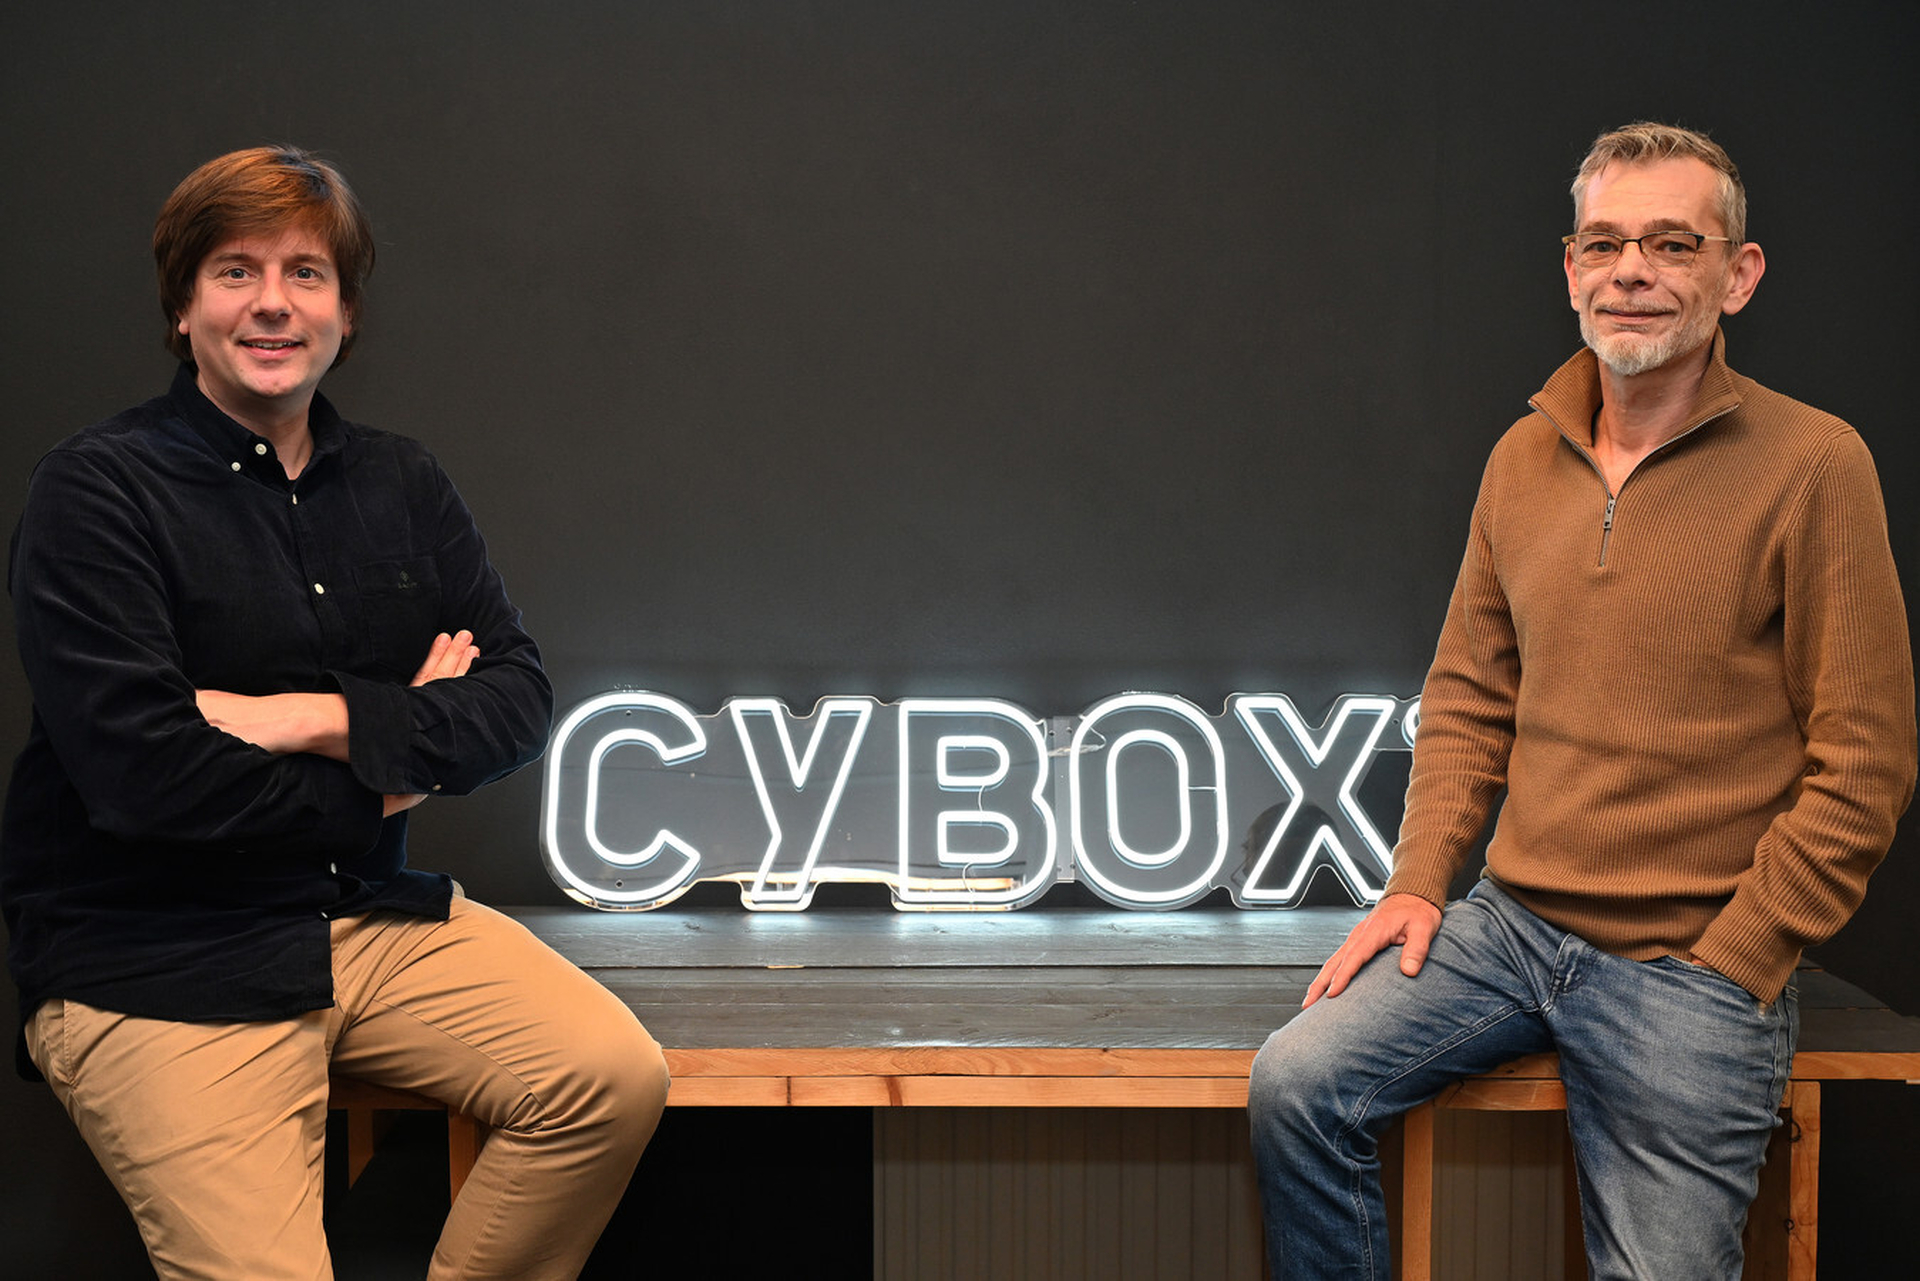 Cybox begint 2023 in de Gelderlander